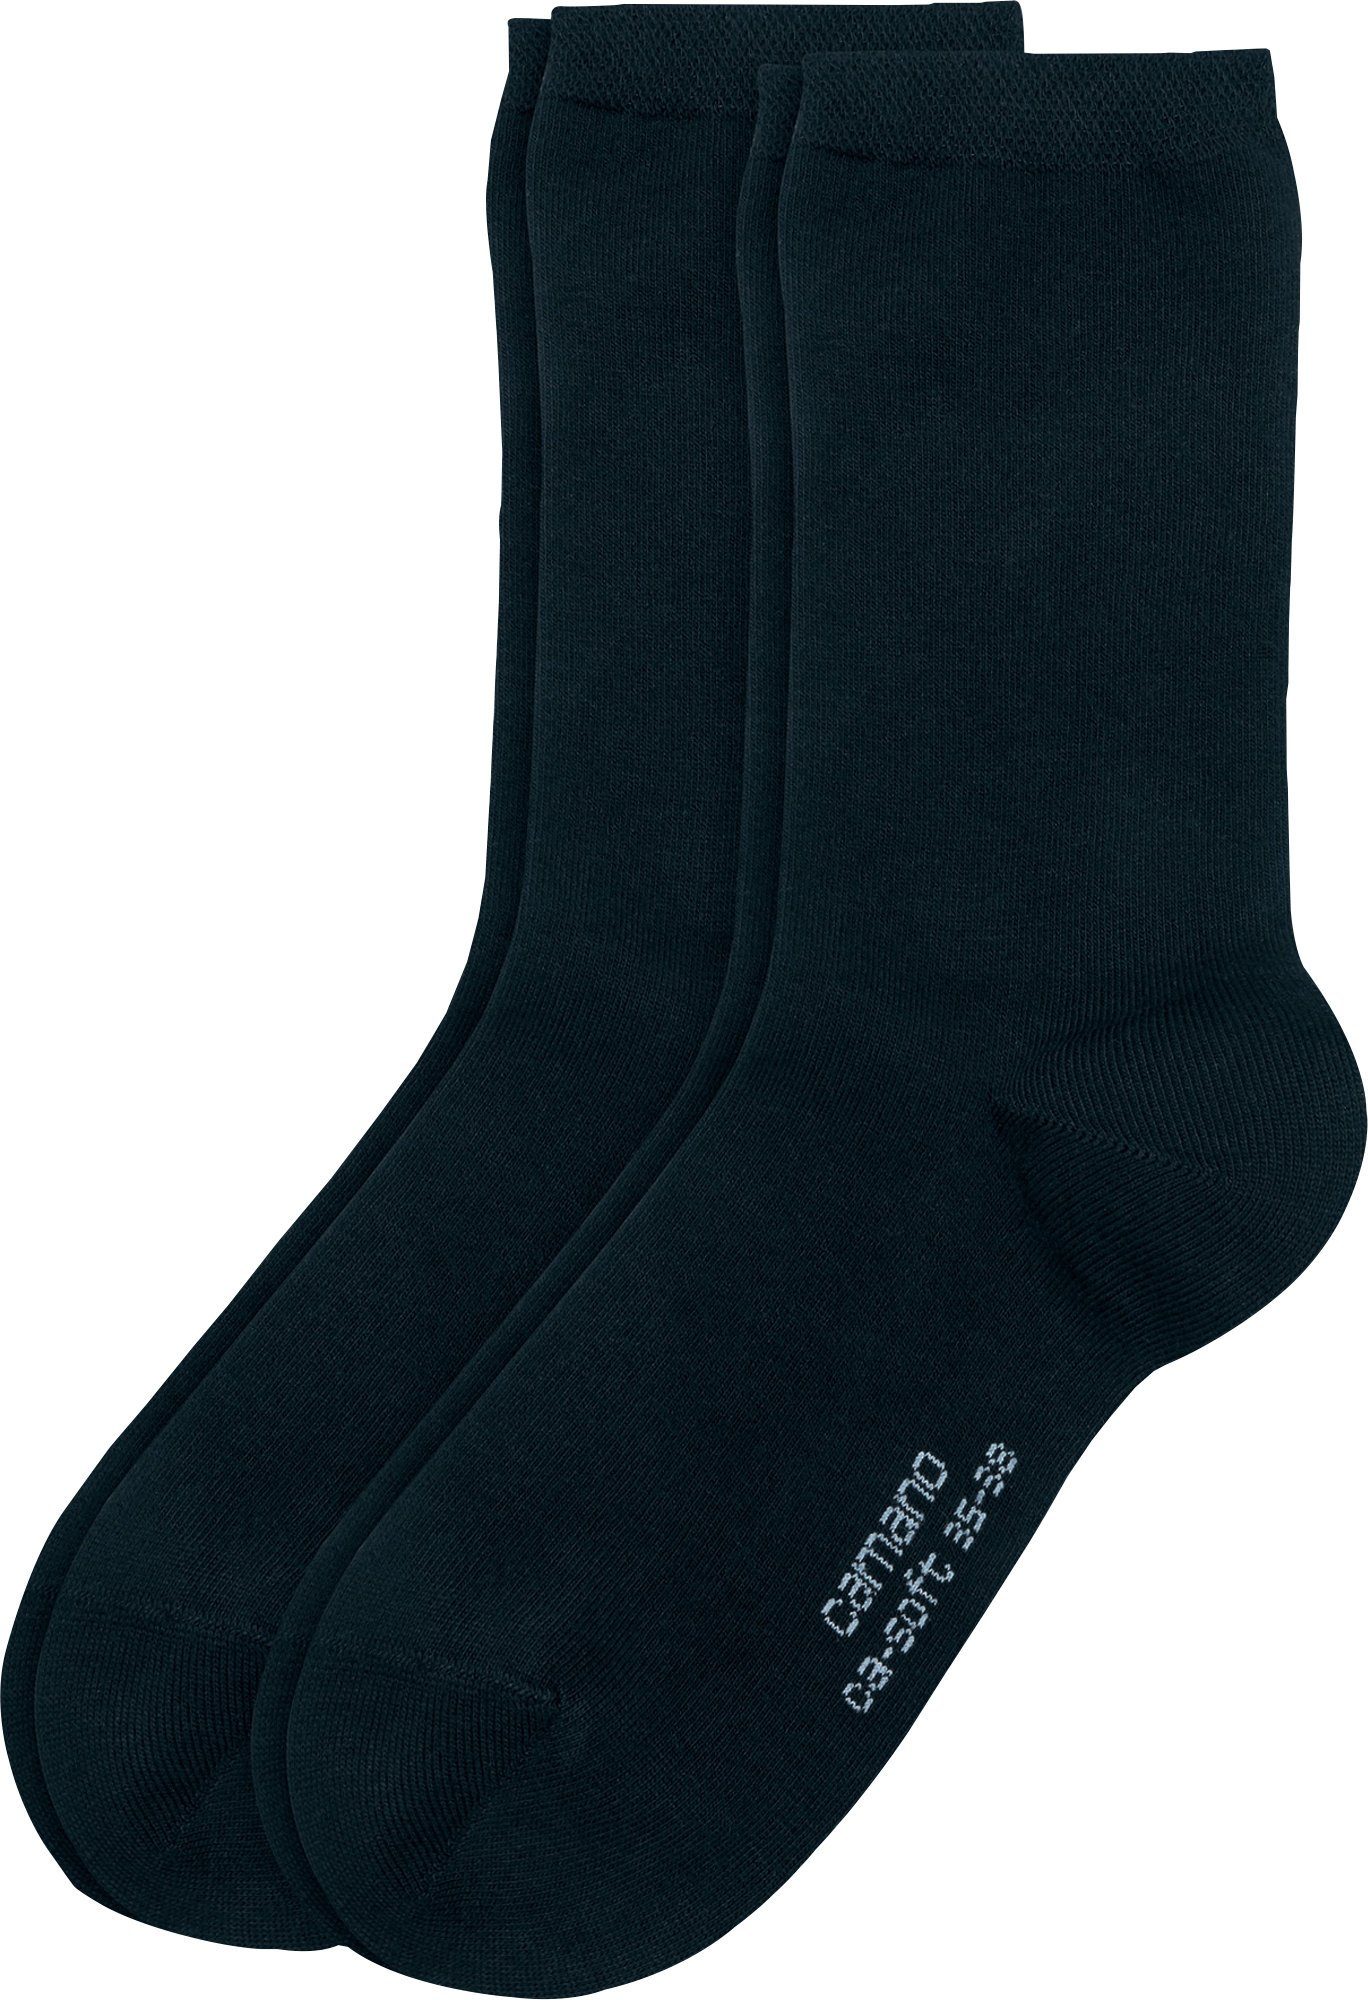 Damen-Socken marine Socken 2 Camano Paar Uni